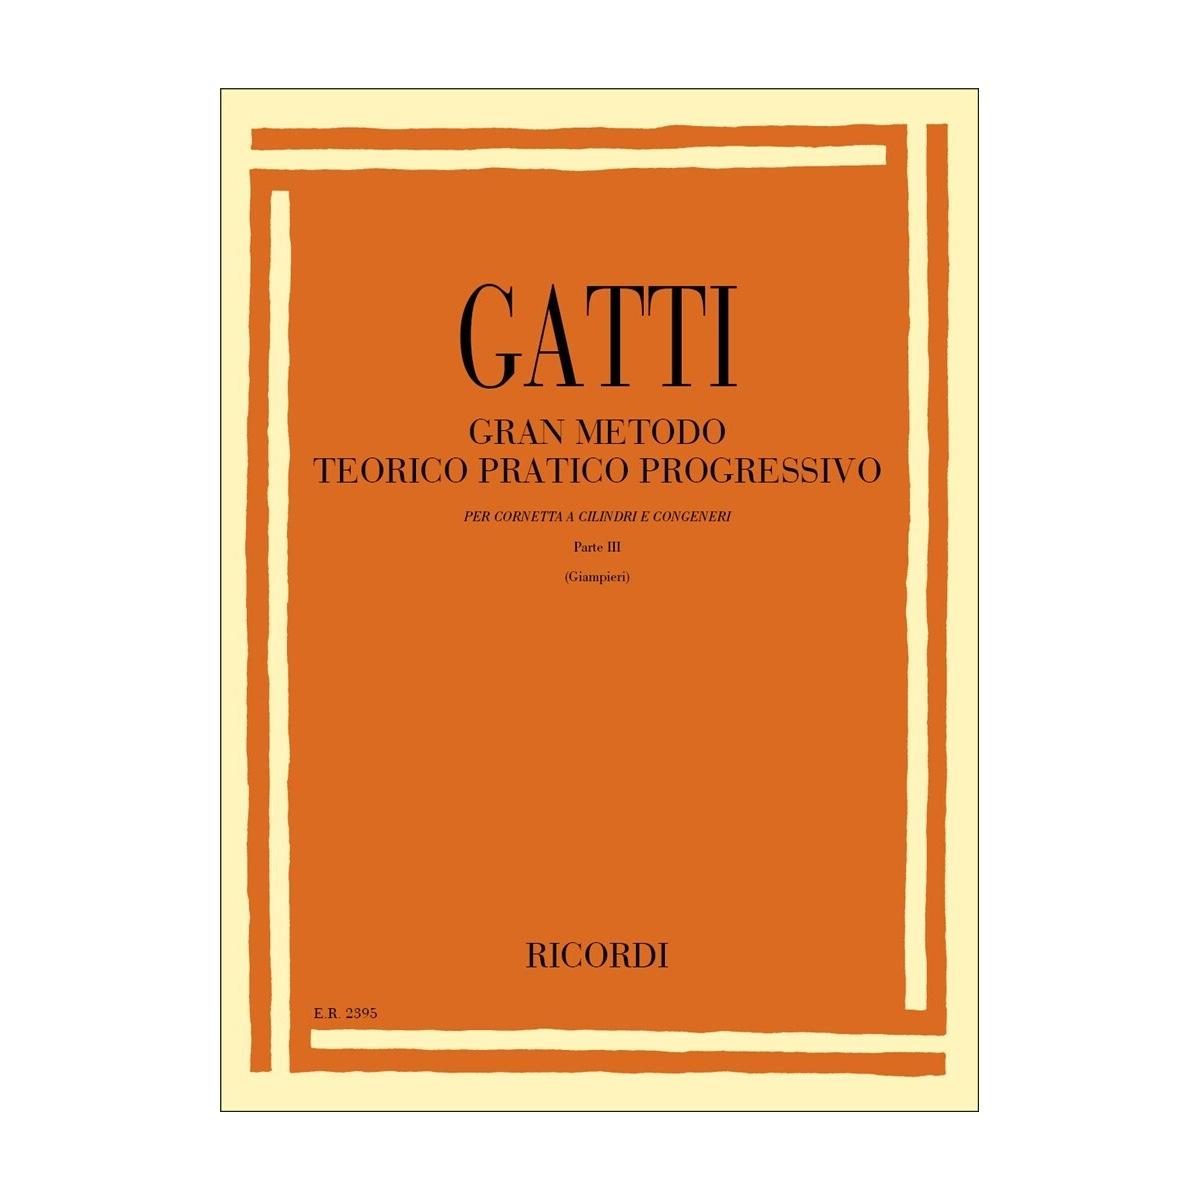 Gatti gran metodo teorico pratico progressivo per tromba parte III